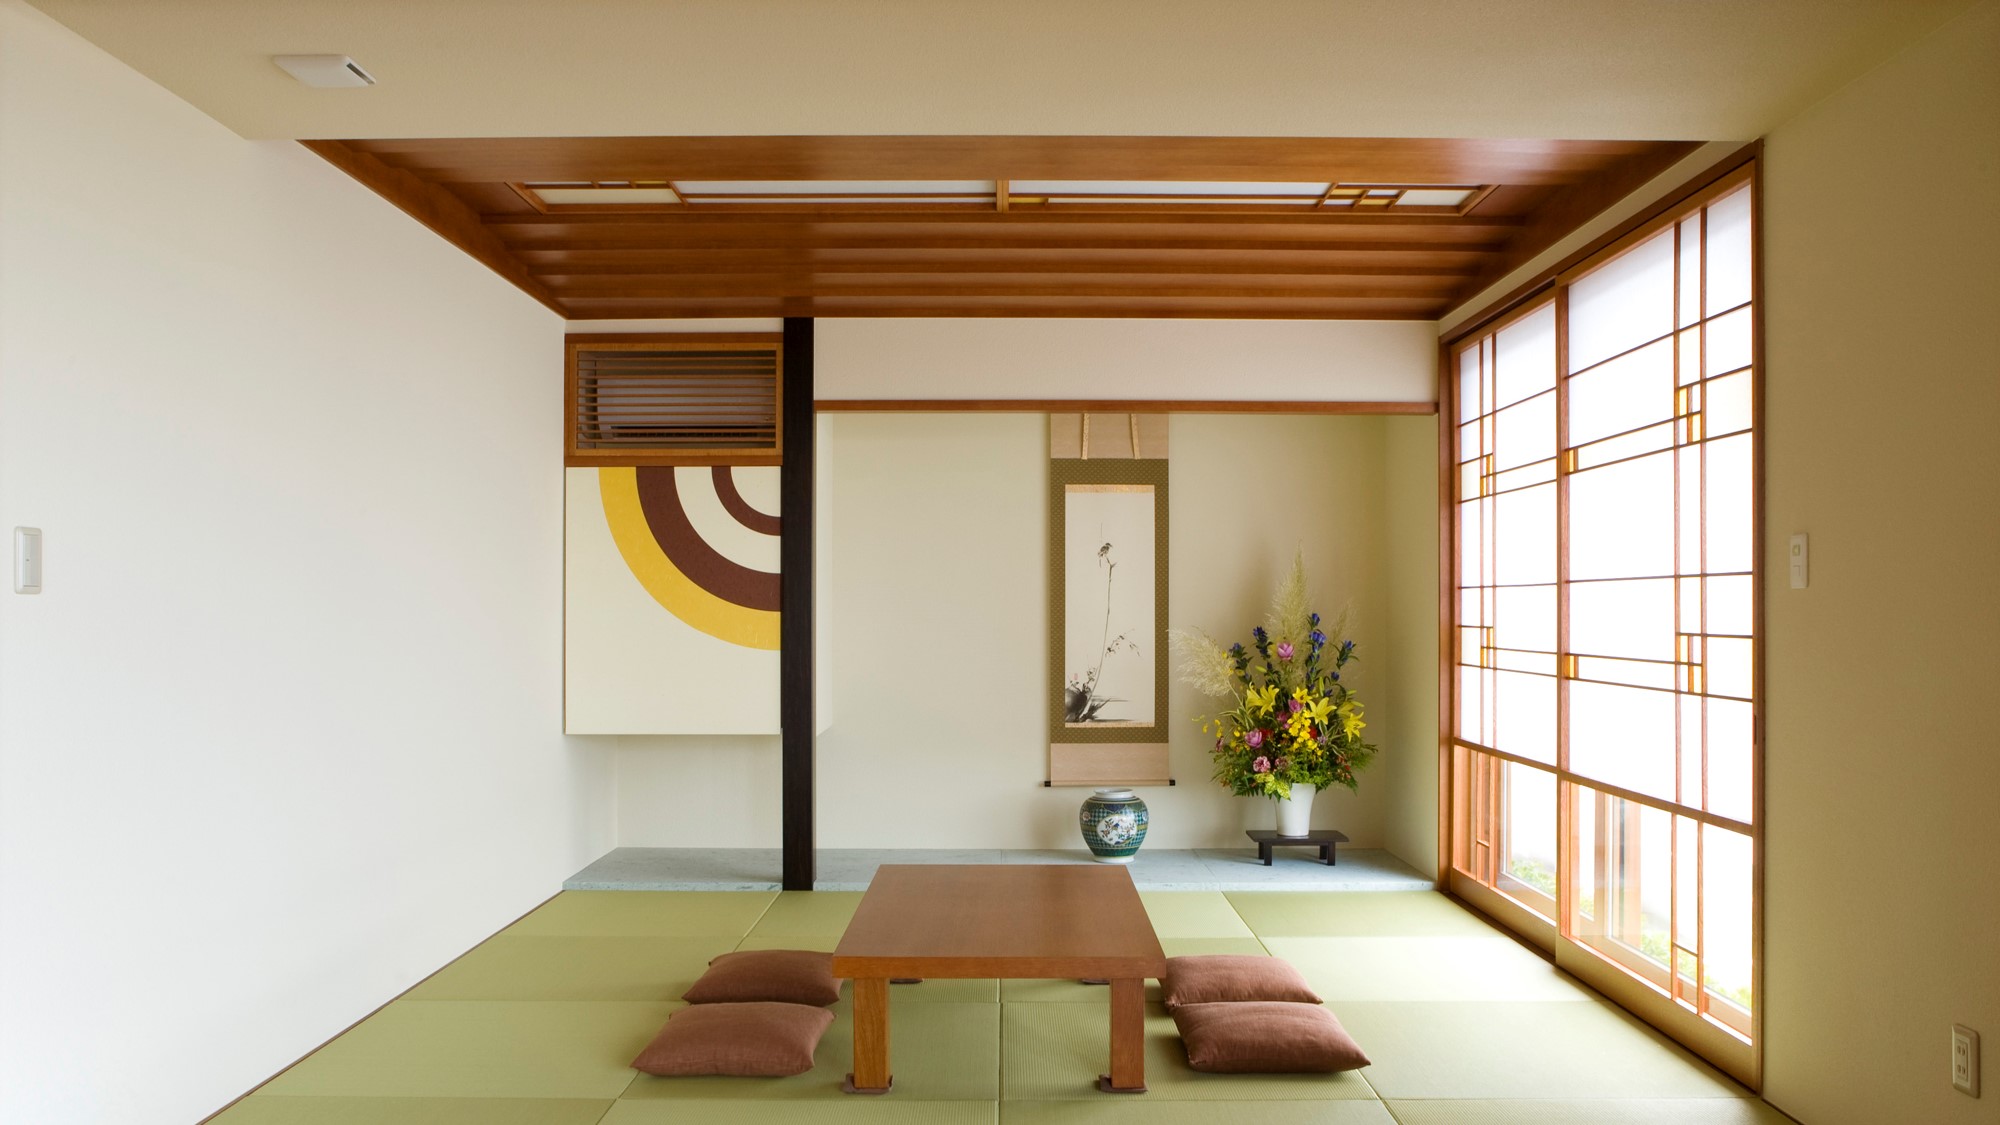 伝統的な和室に独創的な趣を・・・ | お知らせ | オーガニックハウス | 東京・大阪・名古屋・福岡の新築・リフォーム